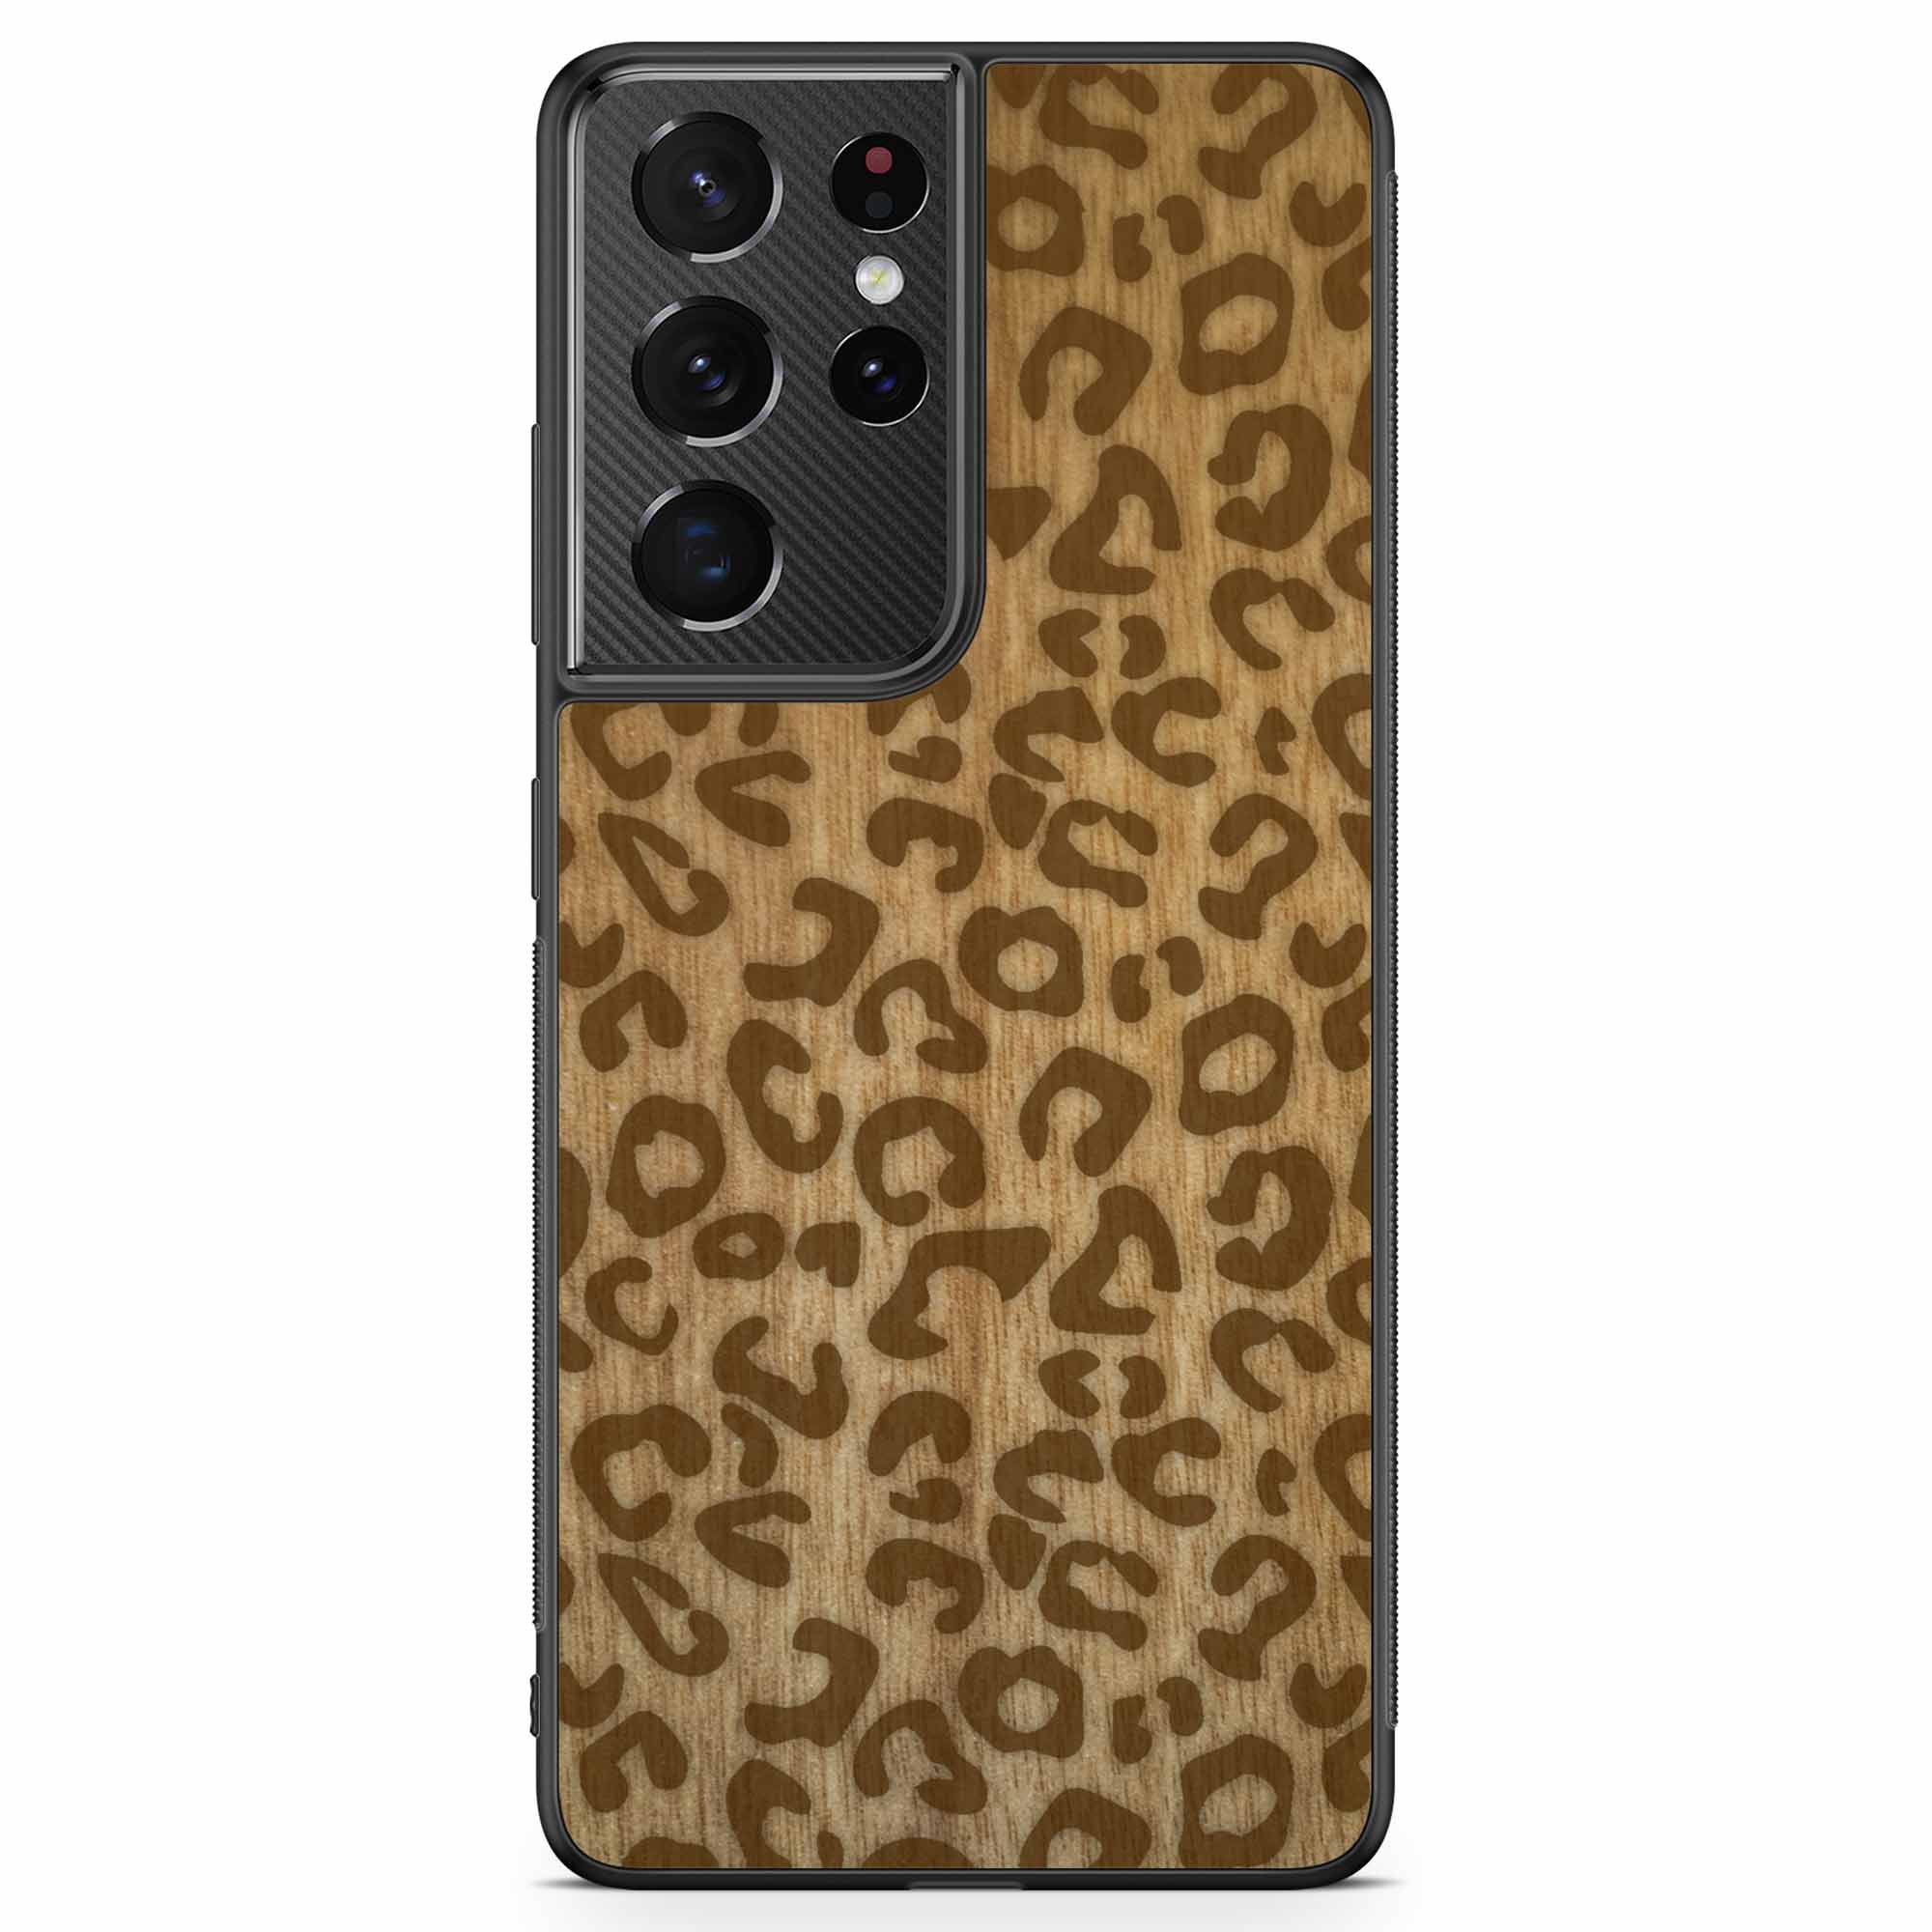 Custodia per cellulare Samsung S21 Ultra Wood con stampa ghepardo